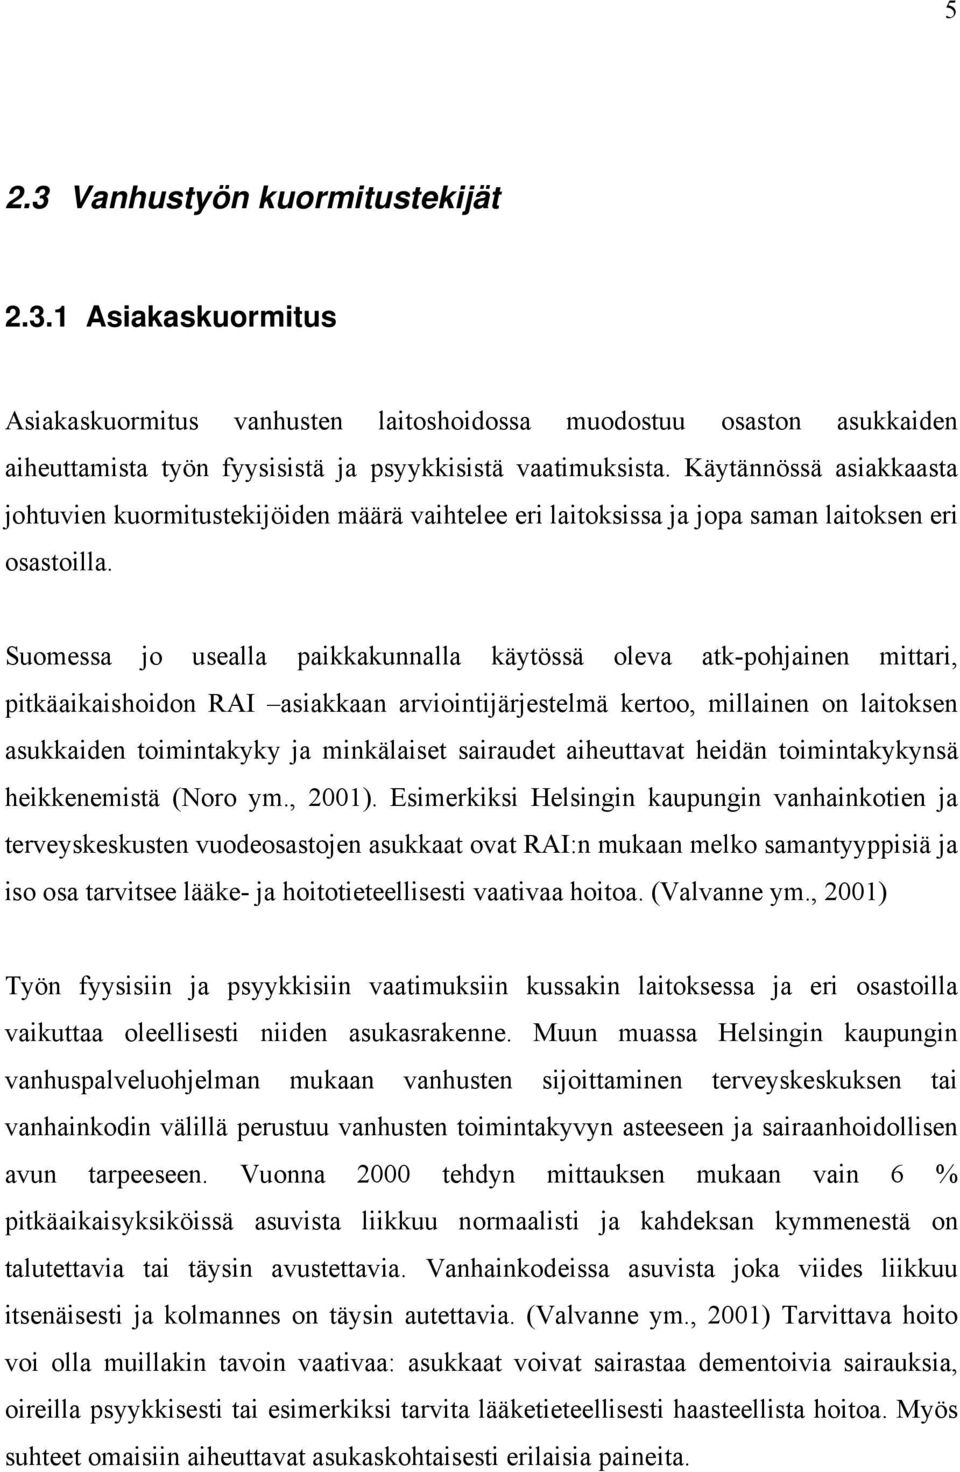 Suomessa jo usealla paikkakunnalla käytössä oleva atk-pohjainen mittari, pitkäaikaishoidon RAI asiakkaan arviointijärjestelmä kertoo, millainen on laitoksen asukkaiden toimintakyky ja minkälaiset